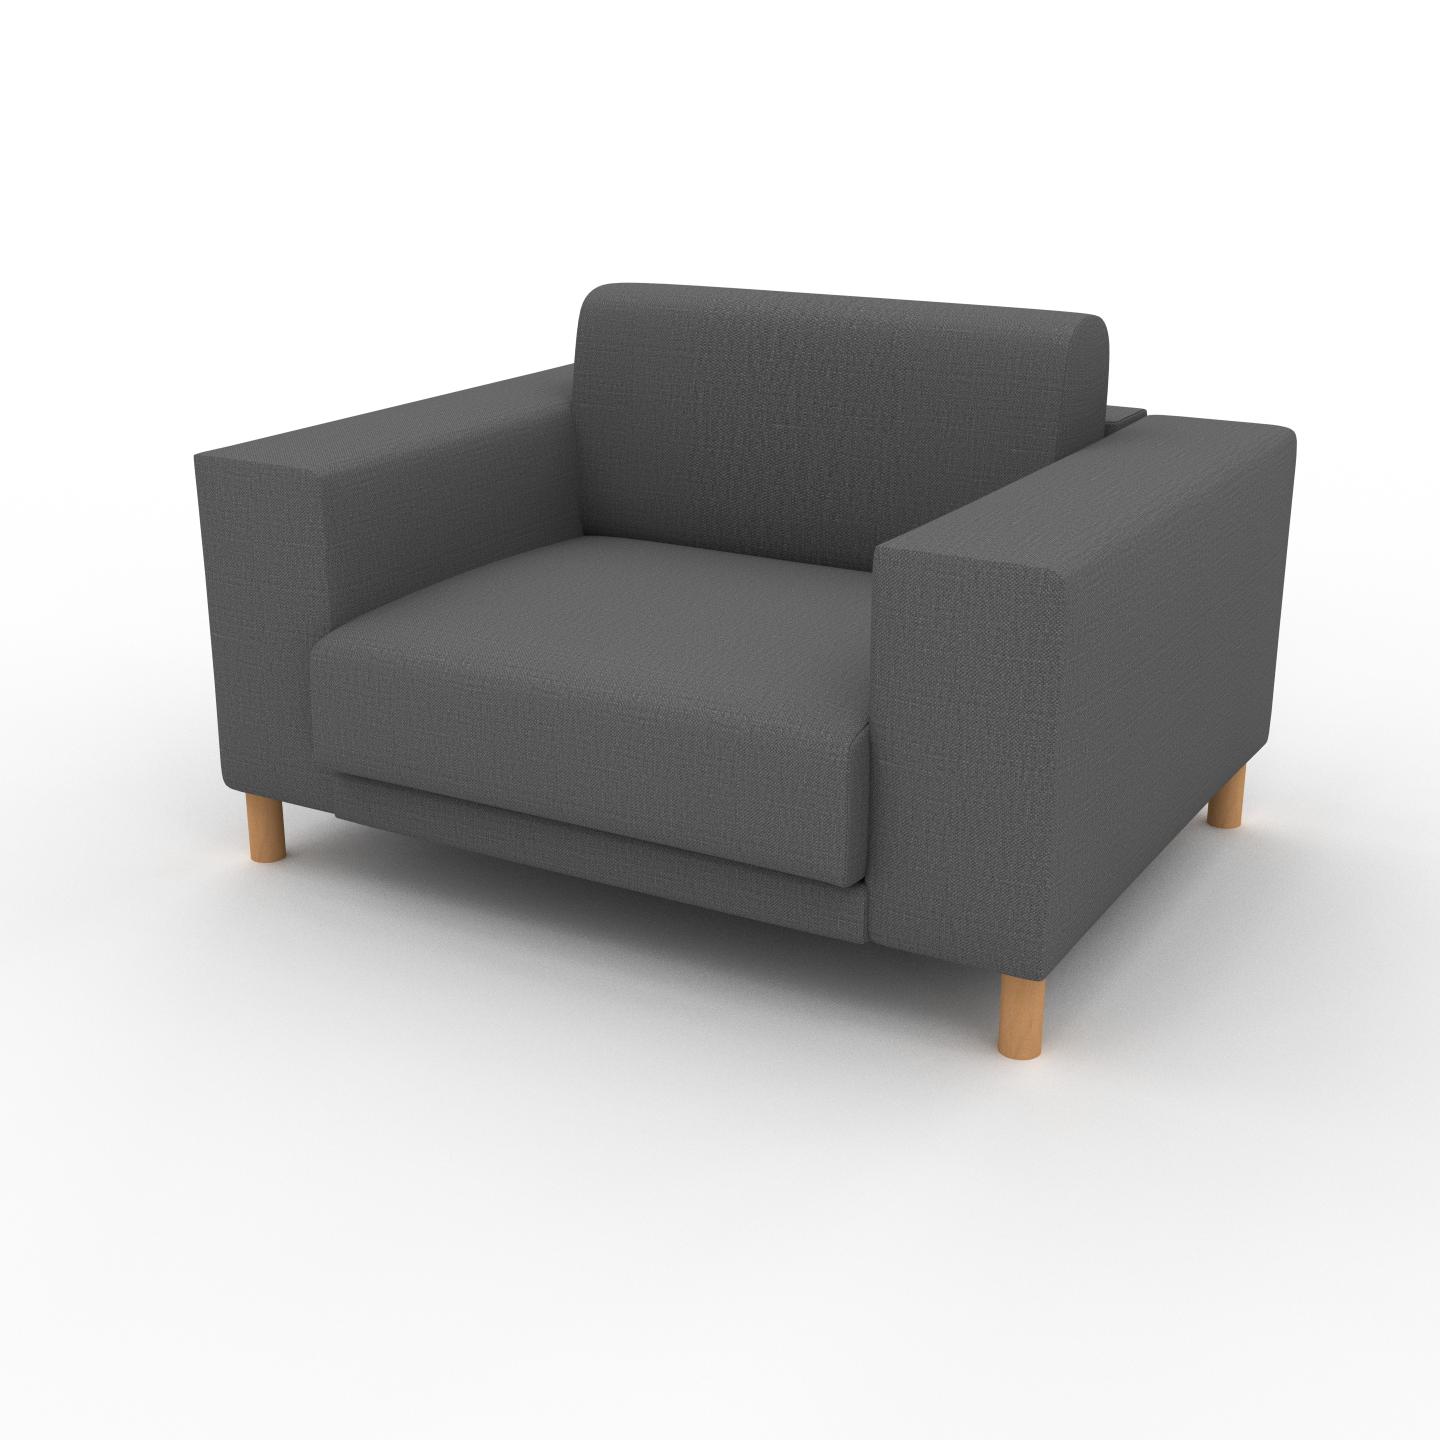 MYCS Sessel Steingrau - Eleganter Sessel: Hochwertige Qualität, einzigartiges Design - 128 x 75 x 98 cm, Individuell konfigurierbar